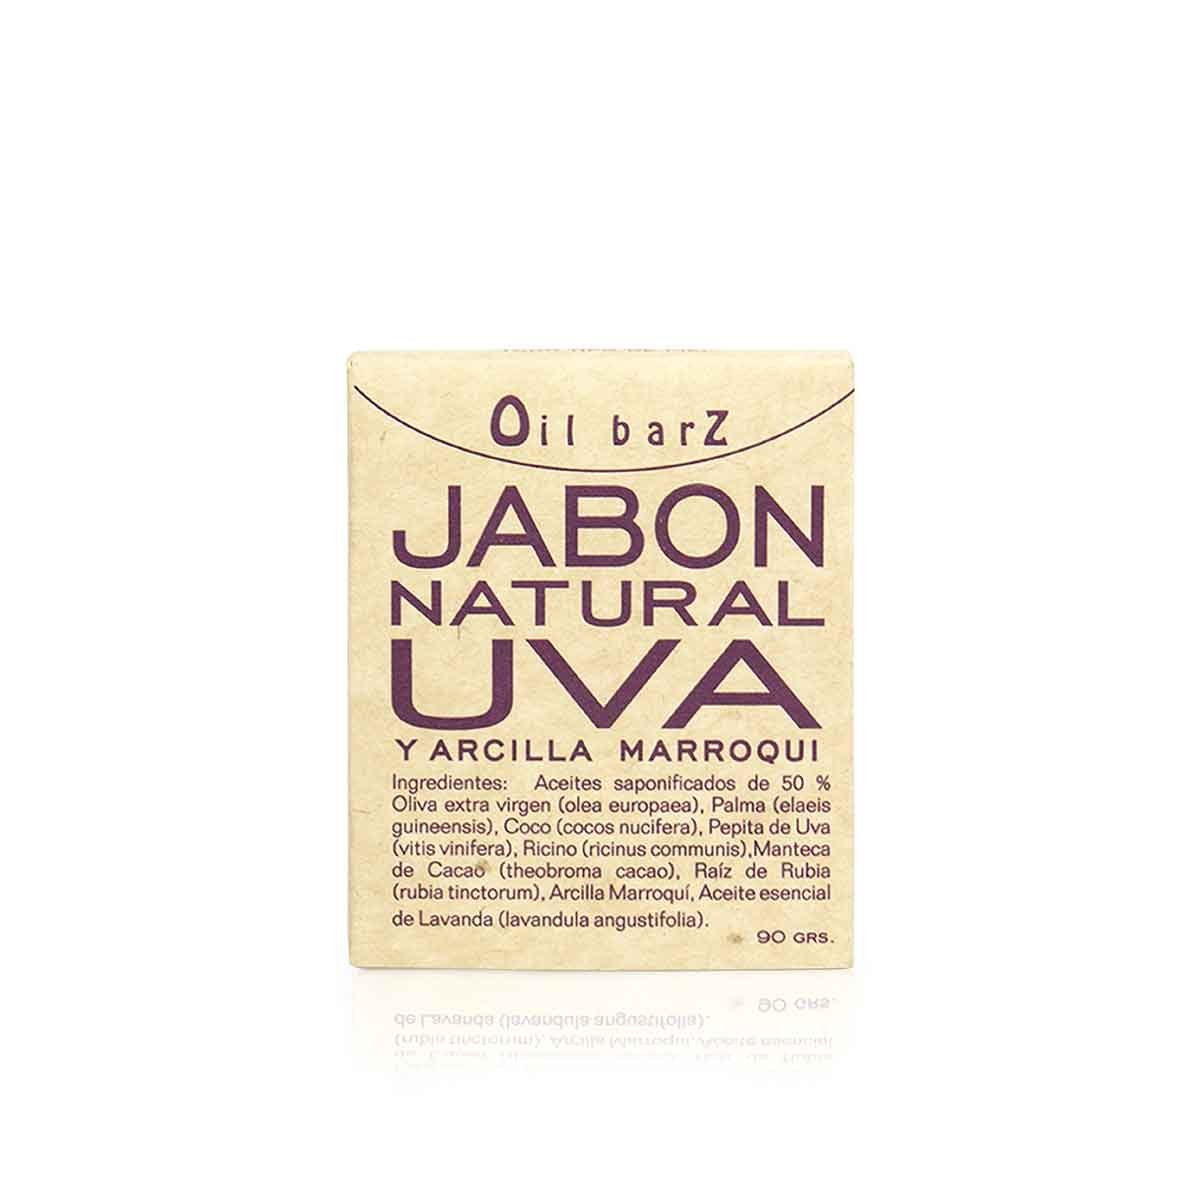 Jabon Natural Uva y Arcilla Marroqui Oil Barz